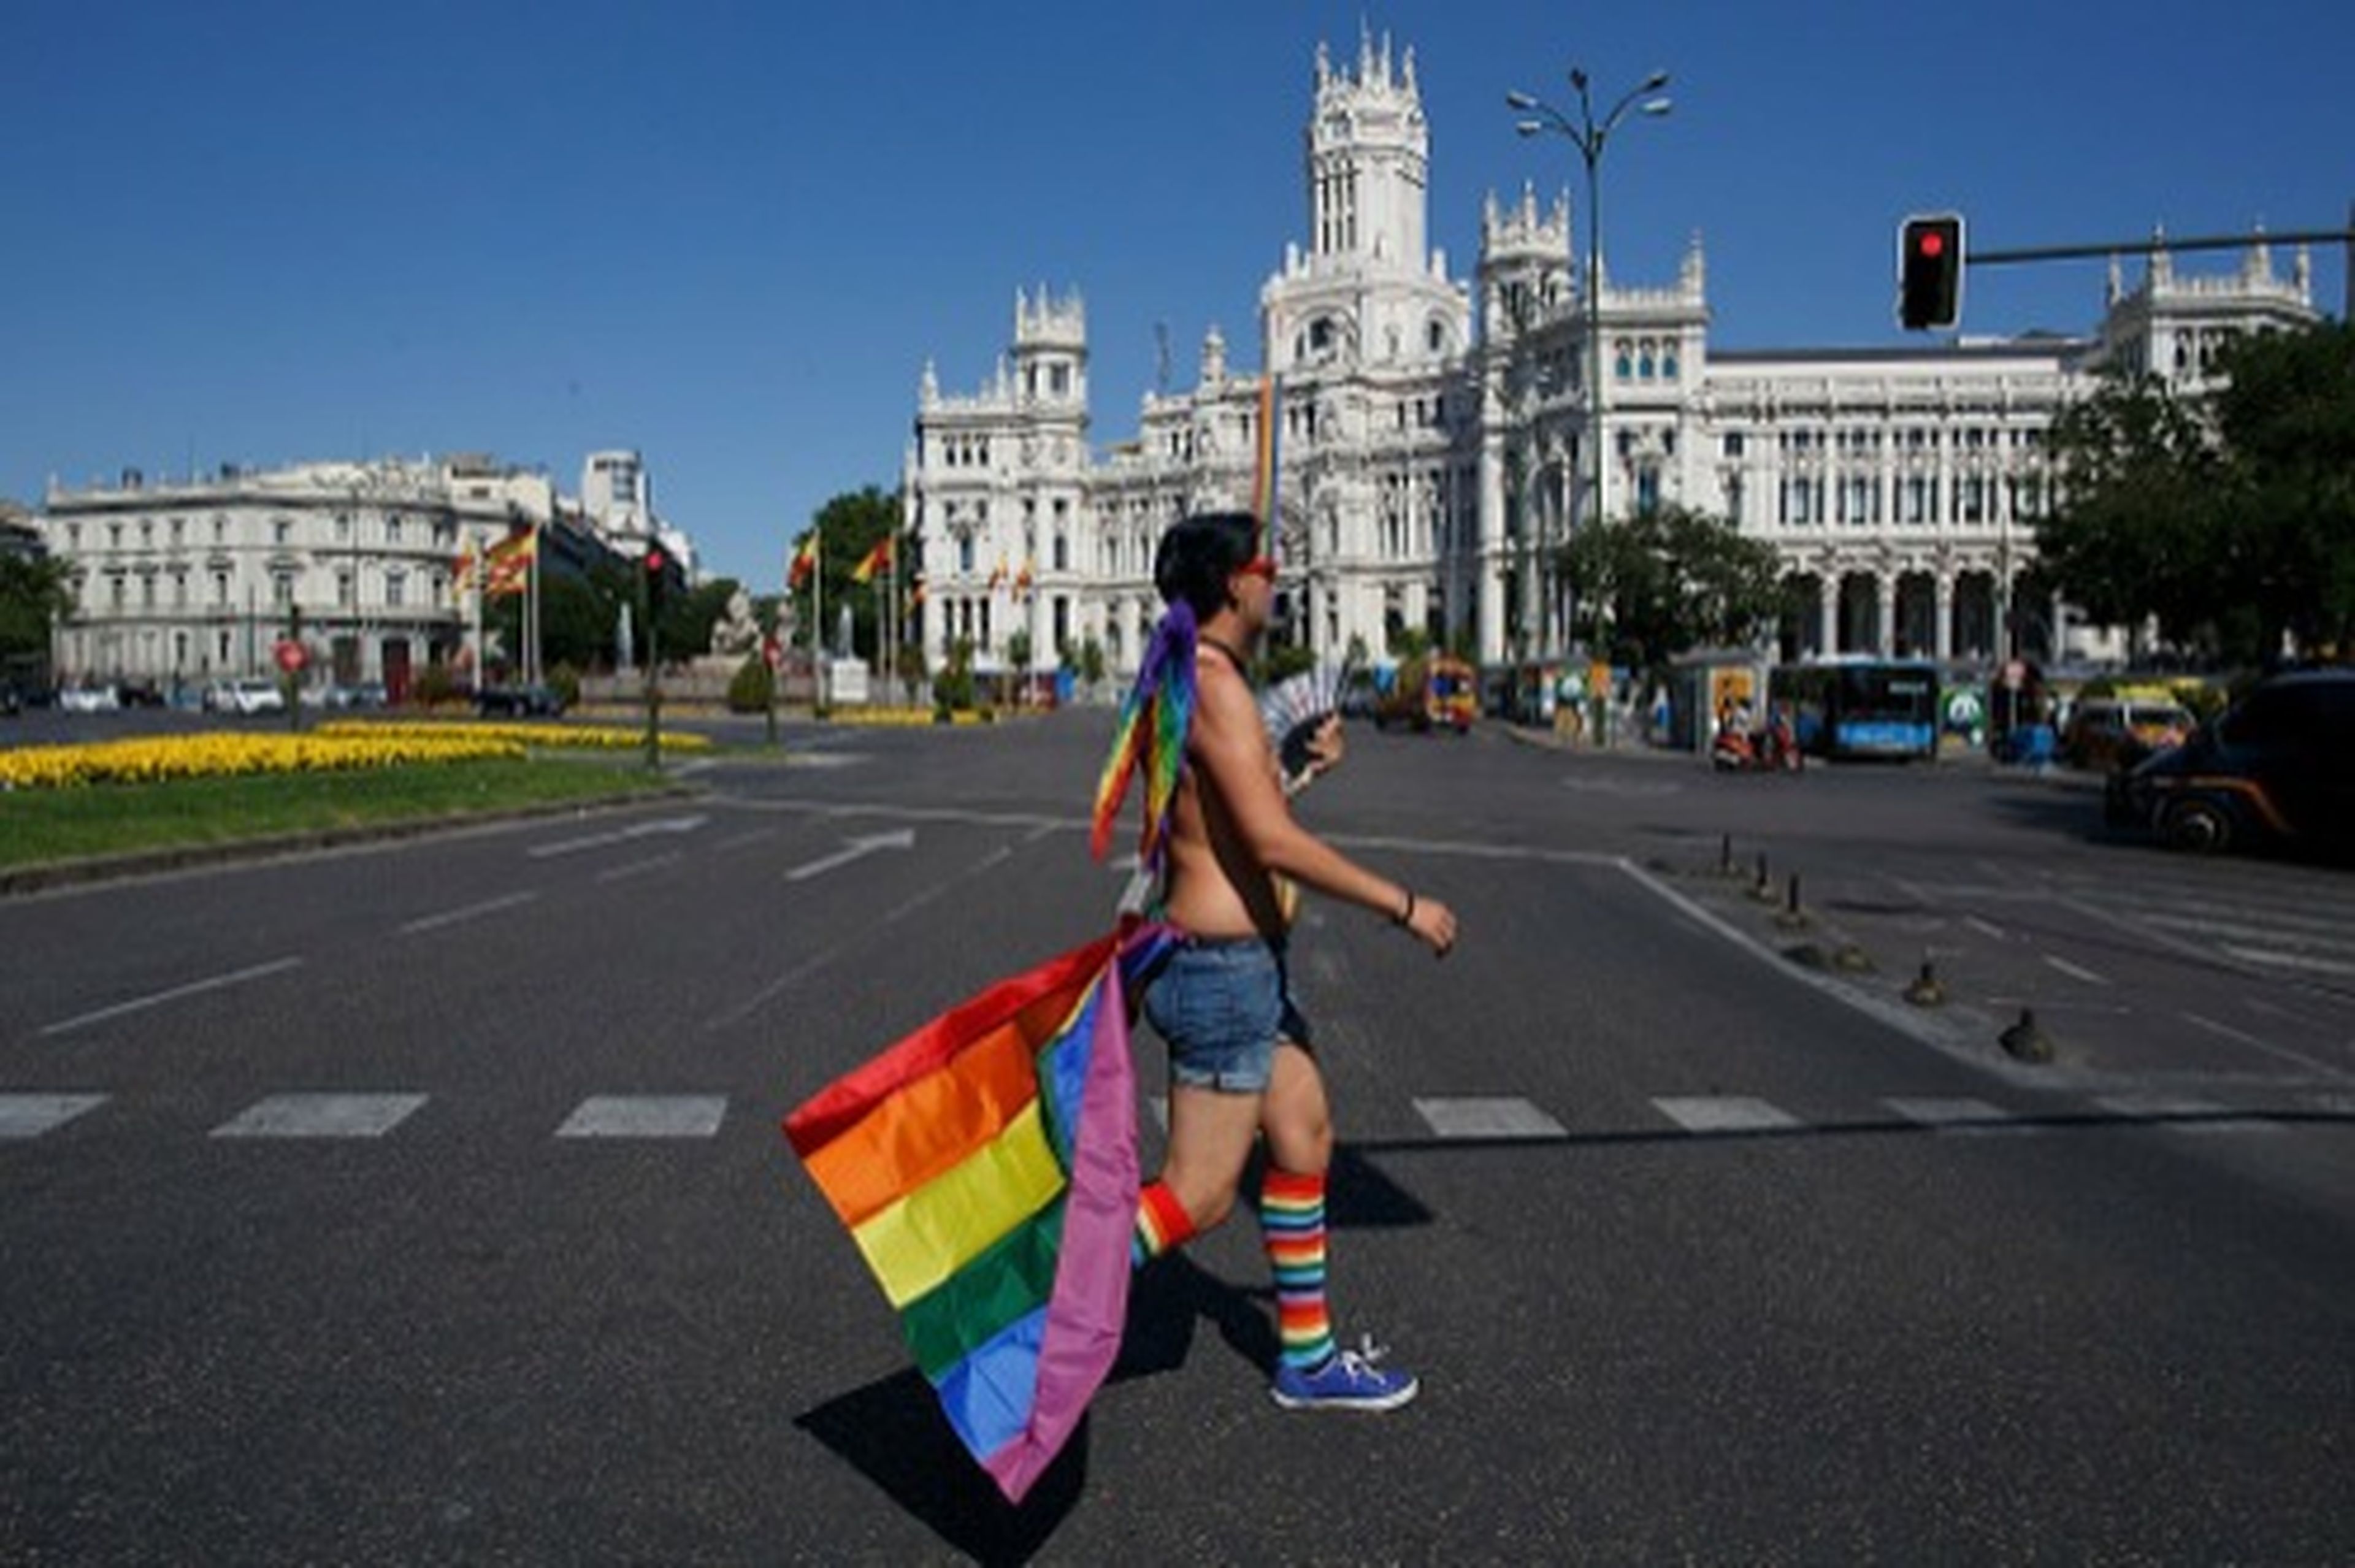 Participante en el Orgullo Gay de Madrid con una bandera arcoiris por las calles aledañas a la Plaza de Cibeles antes del desfile del Orgullo, el 29 de junio de 2016, en Madrid (España).